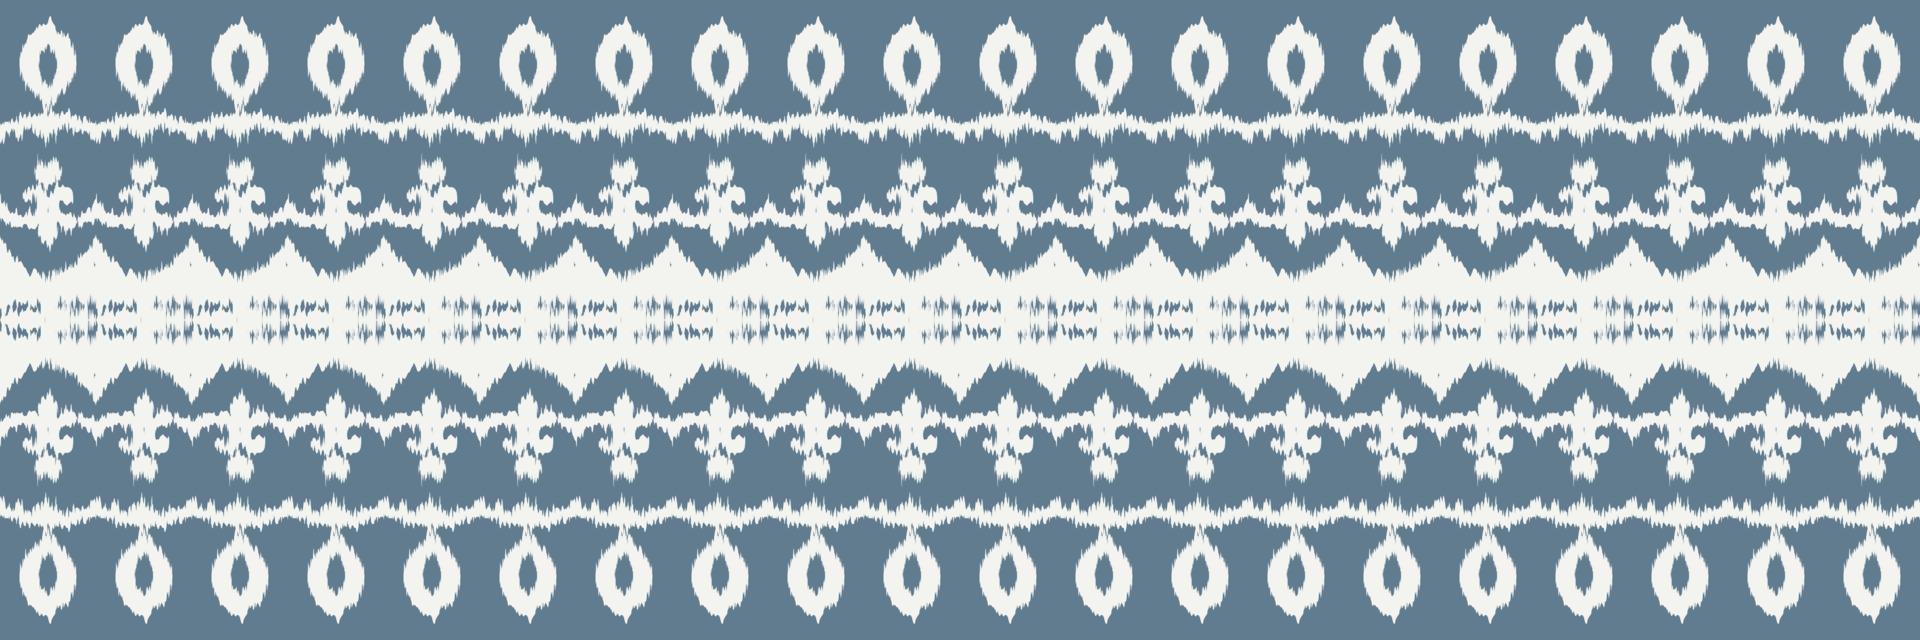 batik têxtil ikkat ou ikat chevron sem costura padrão design de vetor digital para impressão saree kurti borneo tecido borda escova símbolos amostras roupas de festa